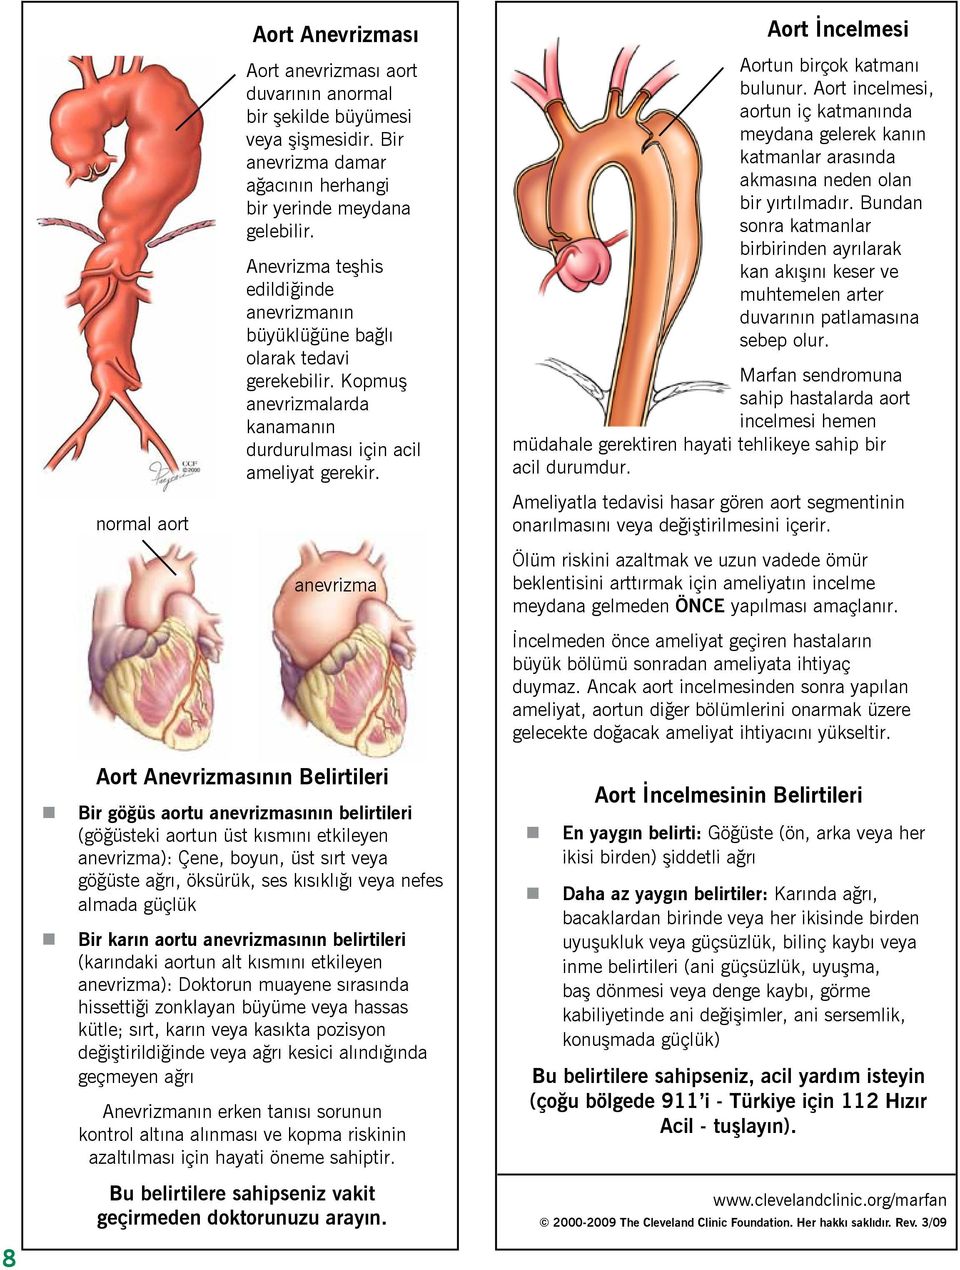 anevrizma Aort İncelmesi Aortun birçok katmanı bulunur. Aort incelmesi, aortun iç katmanında meydana gelerek kanın katmanlar arasında akmasına neden olan bir yırtılmadır.